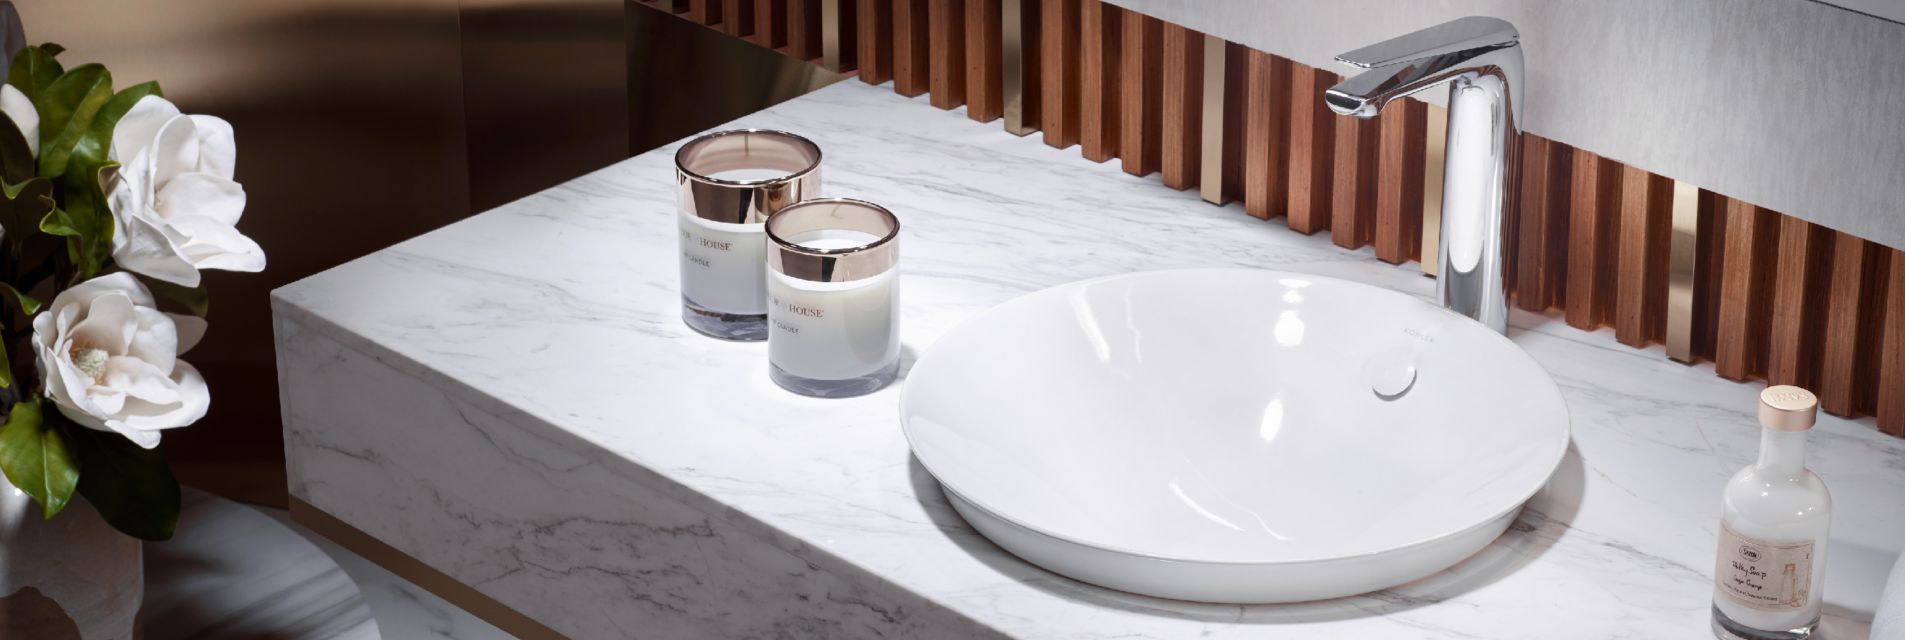 designer luxury bathroom sinks & basin taps | kohler sg